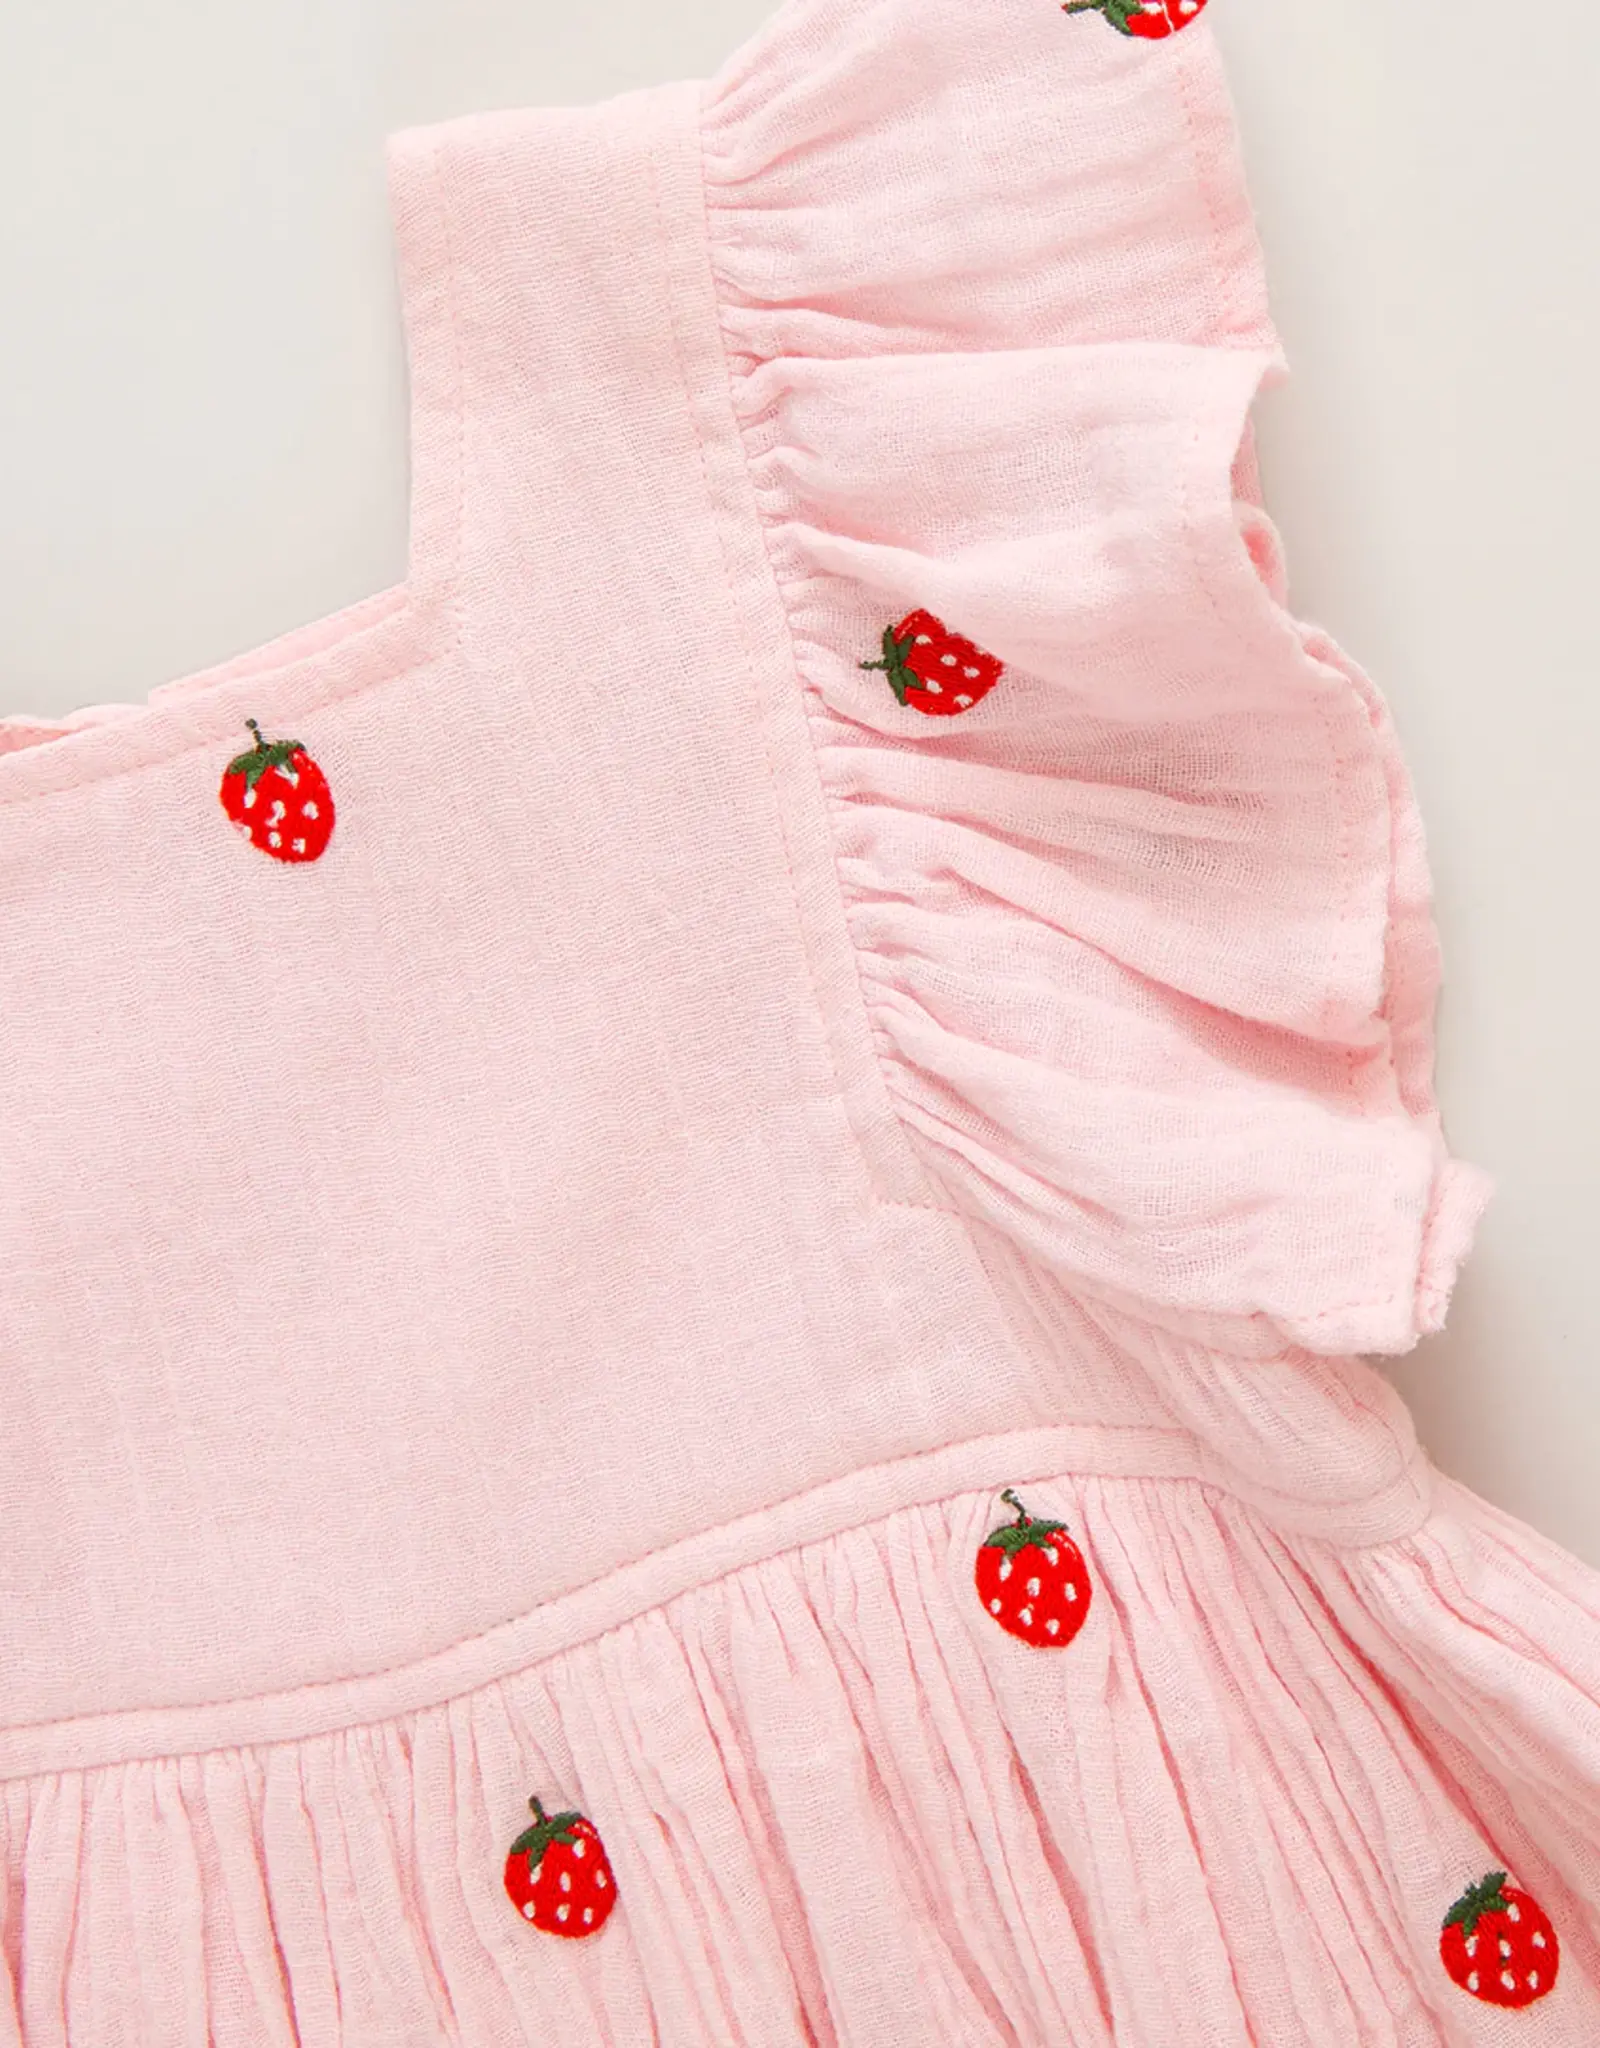 Pink Chicken girls elsie dress - strawberry embroidery